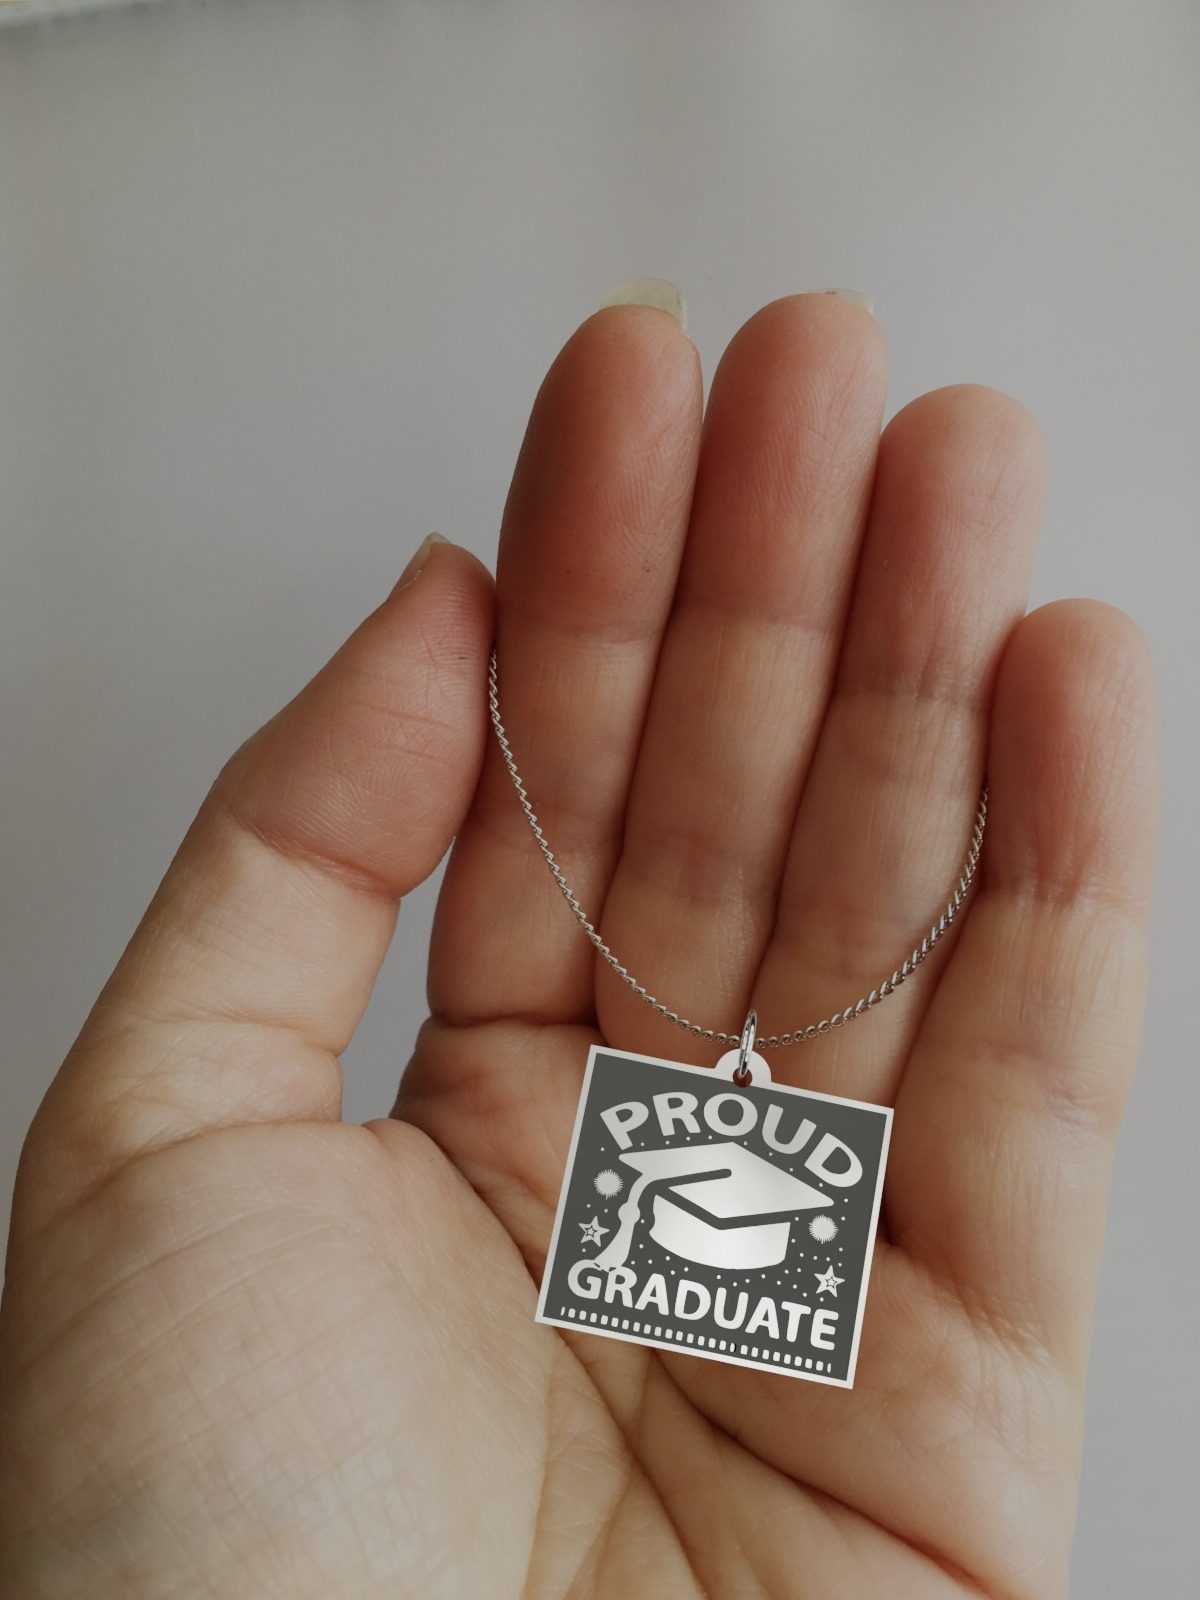 Proud Graduate Charm Necklace